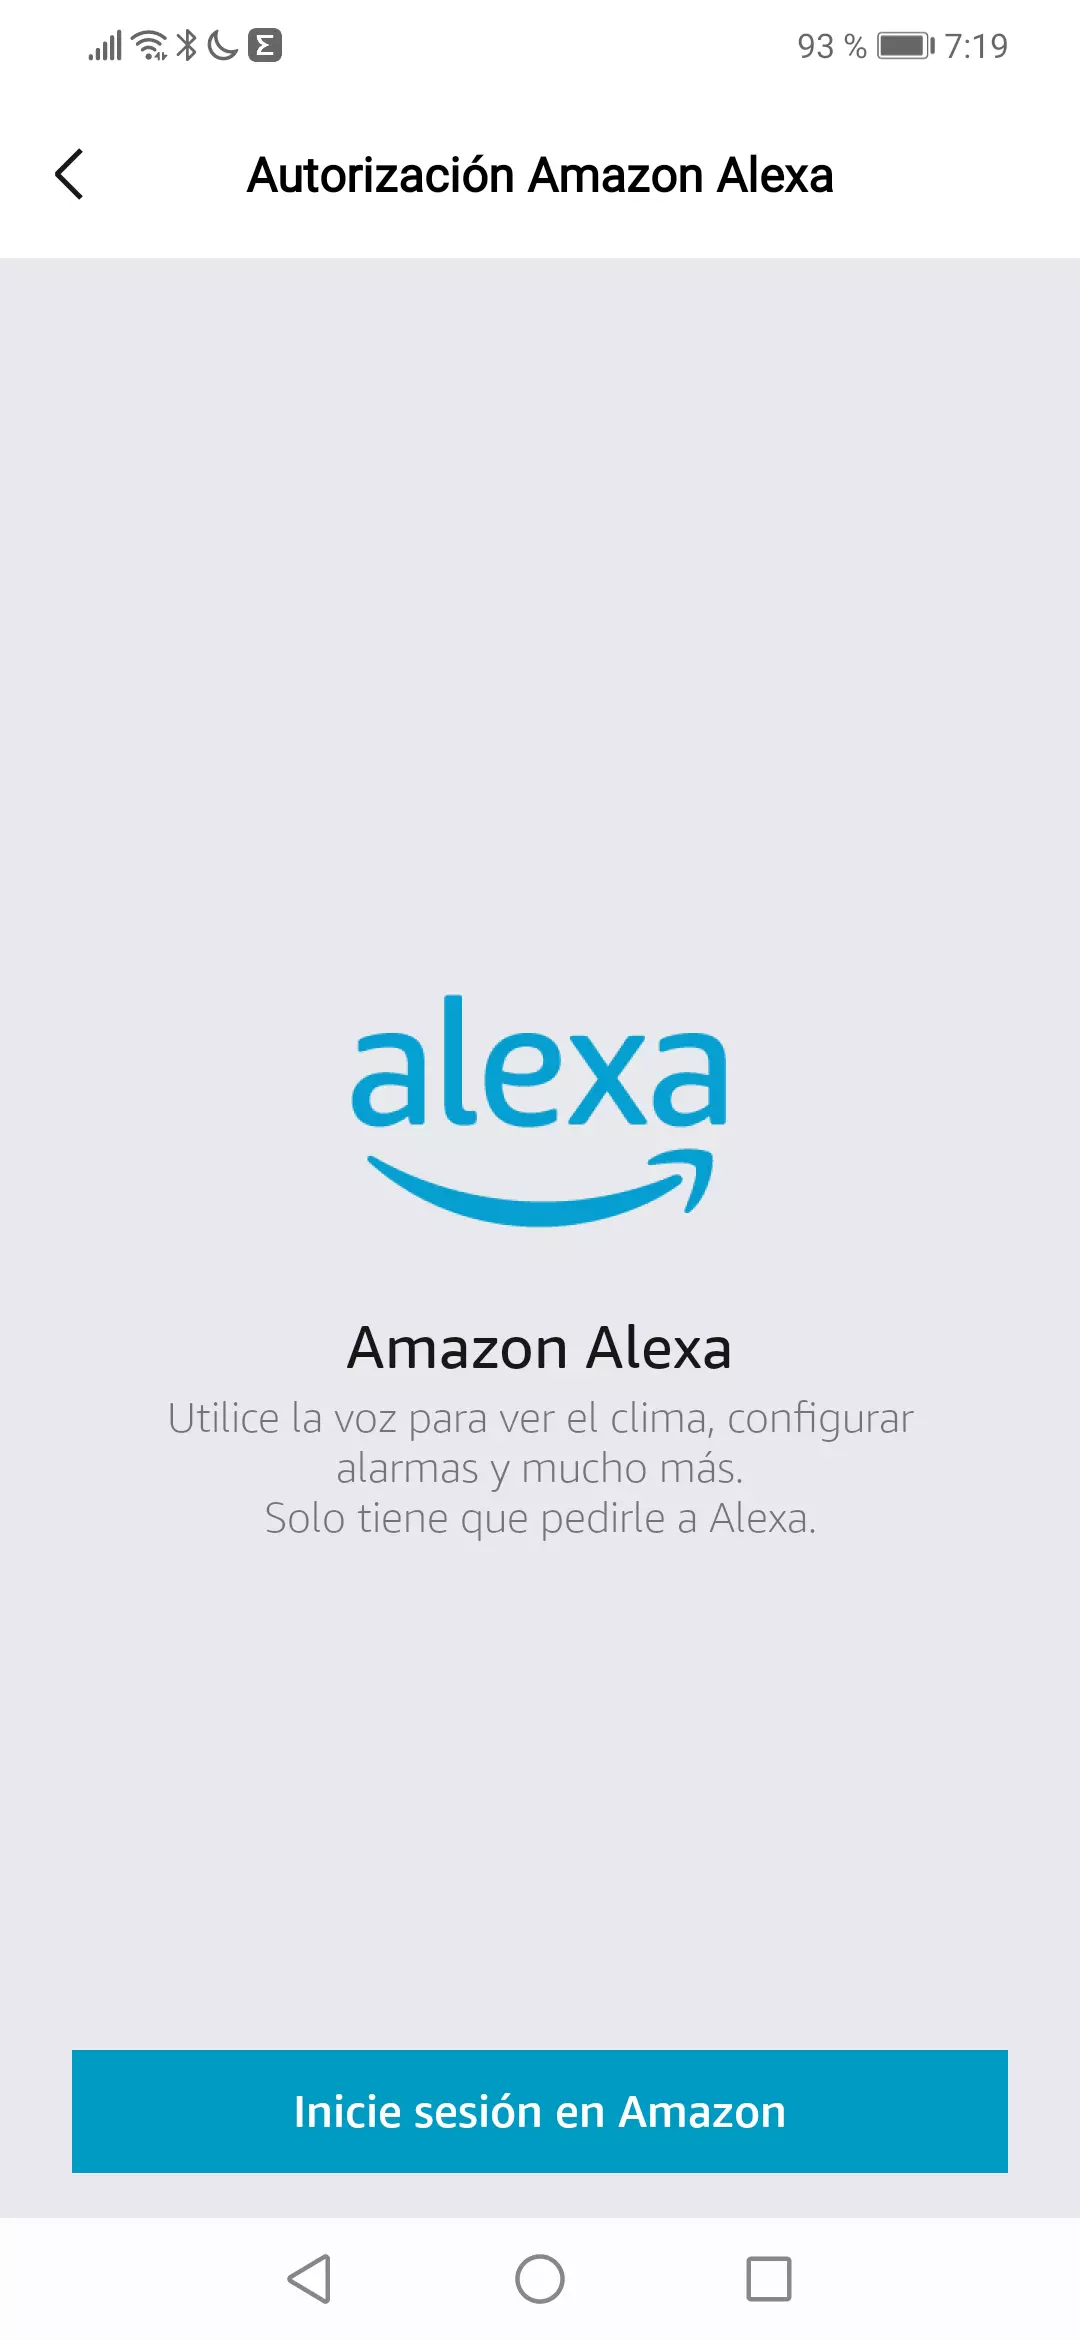 Autorización Amazon Alexa con inicio de sesión en Amazon para la app Zepp